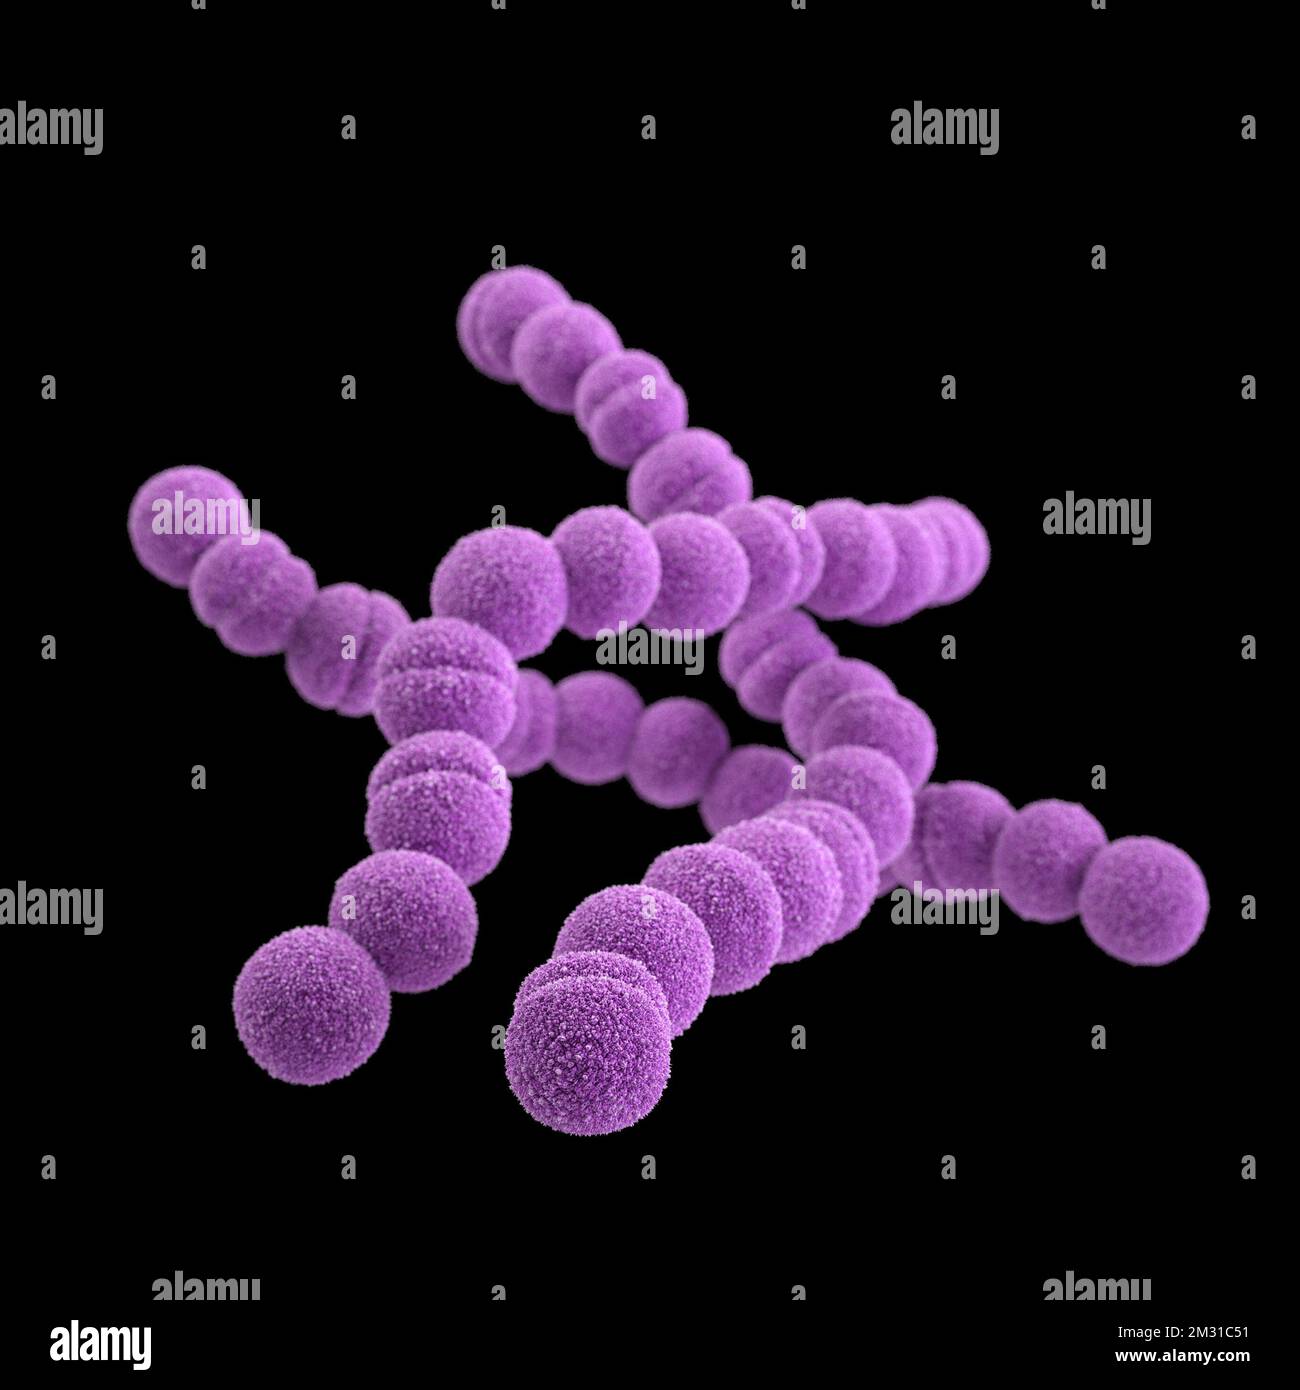 Streptokokkenbakterien der Gruppe A. STREP A Streptococcus pyogenes ist eine Art von grampositiven, aerotoleranten Bakterien der Gattung Streptococcus. Diese Bakterien sind extrazellulär und bestehen aus nicht beweglichen und nicht sporierenden Kokken, die dazu neigen, sich in Ketten zu verbinden. Diese Abbildung zeigt ein computergeneriertes 3D-Bild einer Gruppe von Gram-positiven Streptococcus pyogenes (Streptococcus-Bakterien der Gruppe A). Die Visualisierung basierte auf rasterelektronenmikroskopischen (SEM) Bildern. Optimierte Version eines Bildes, das von den US Centers for Disease Control and Prevention / credit CDC /J.Oosthuizen produziert wurde Stockfoto